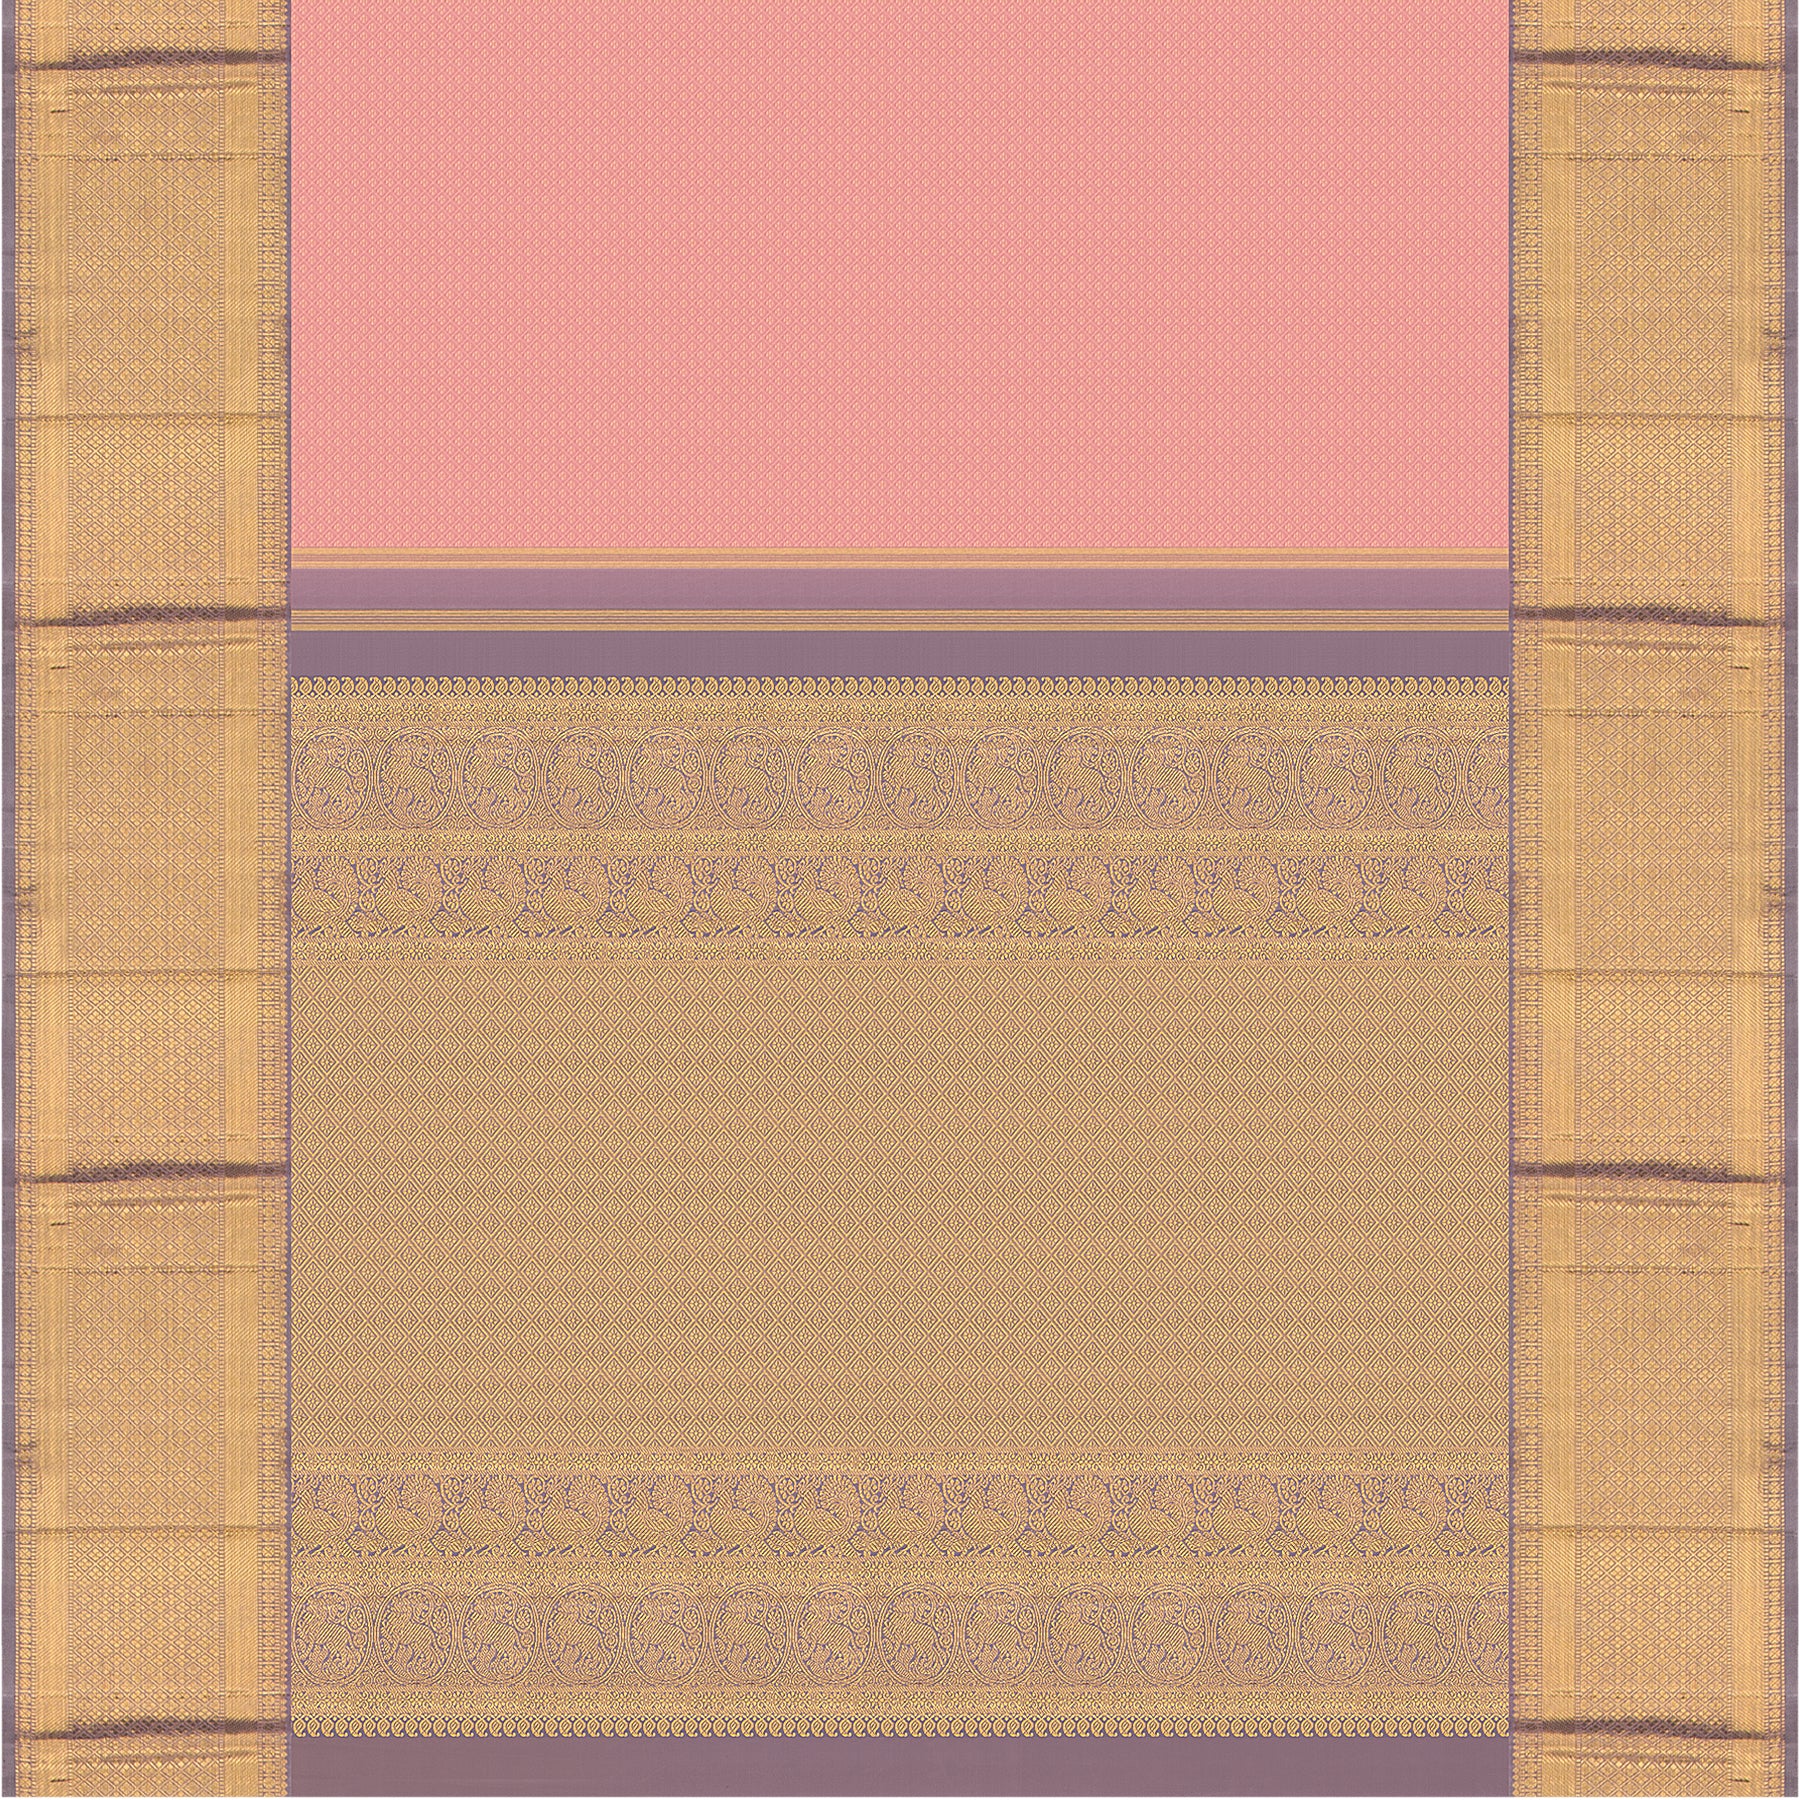 Kanakavalli Kanjivaram Silk Sari 23-110-HS001-00958 - Full View